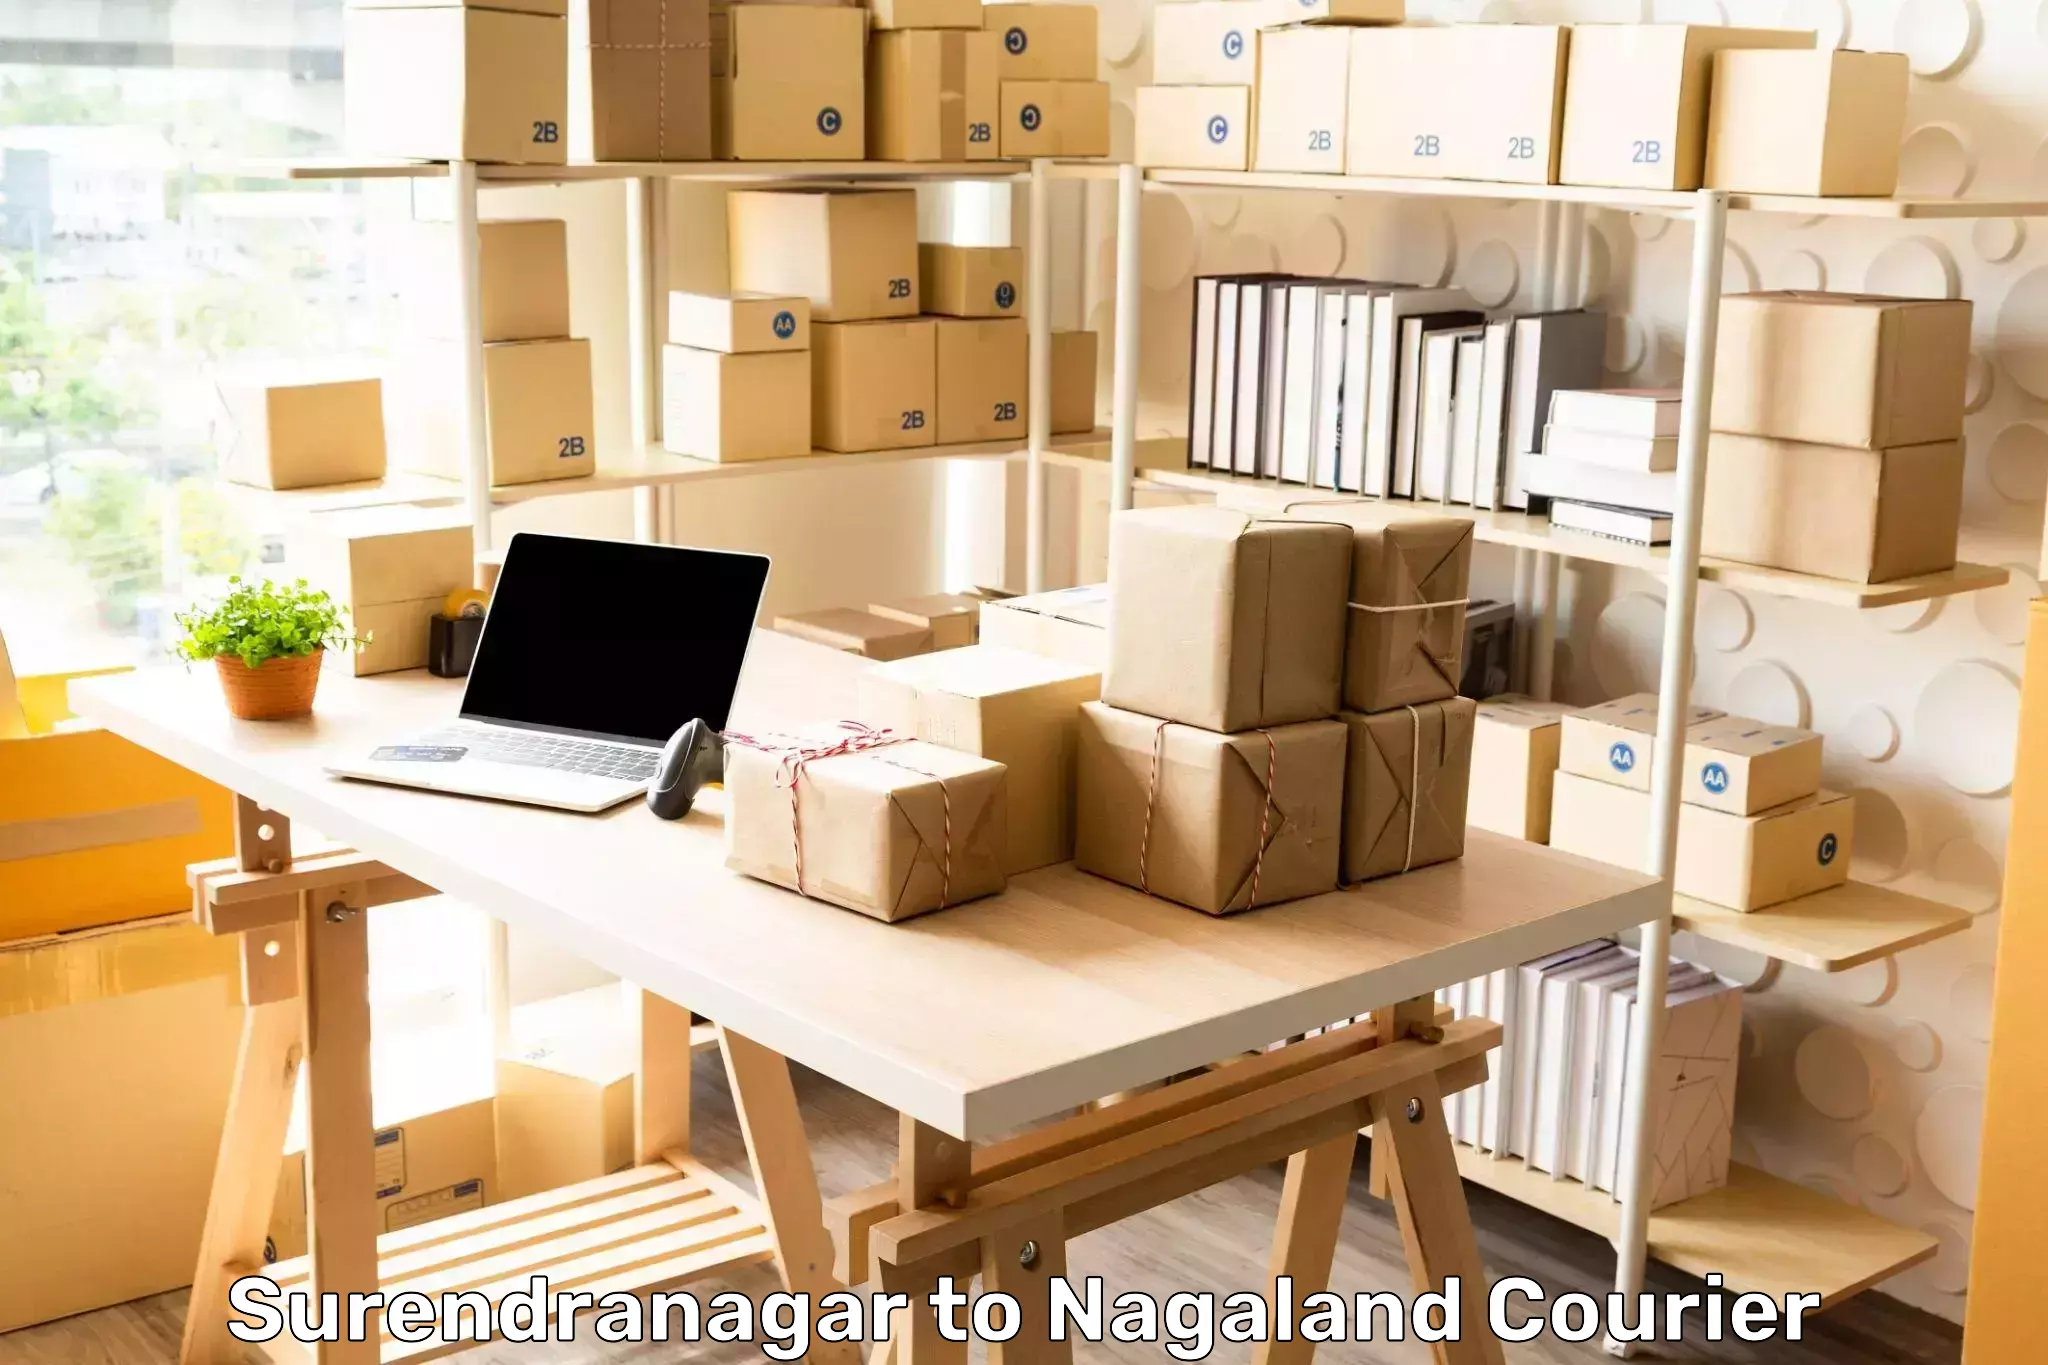 Efficient logistics management Surendranagar to Nagaland